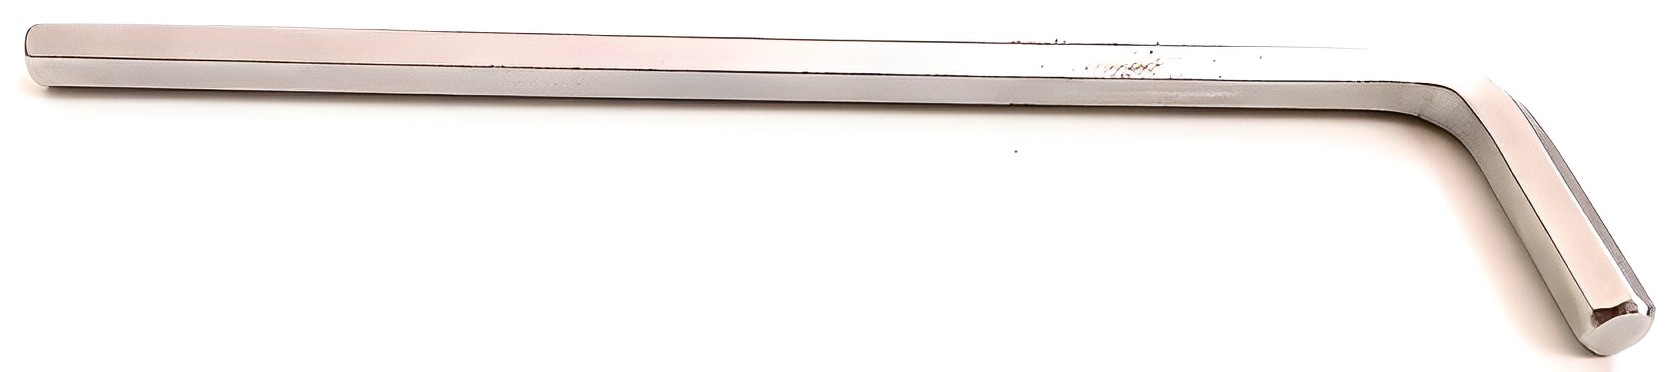 Hình ảnh 1 của mặt hàng Lục giác dài 4mm Stanley STMT94114-8